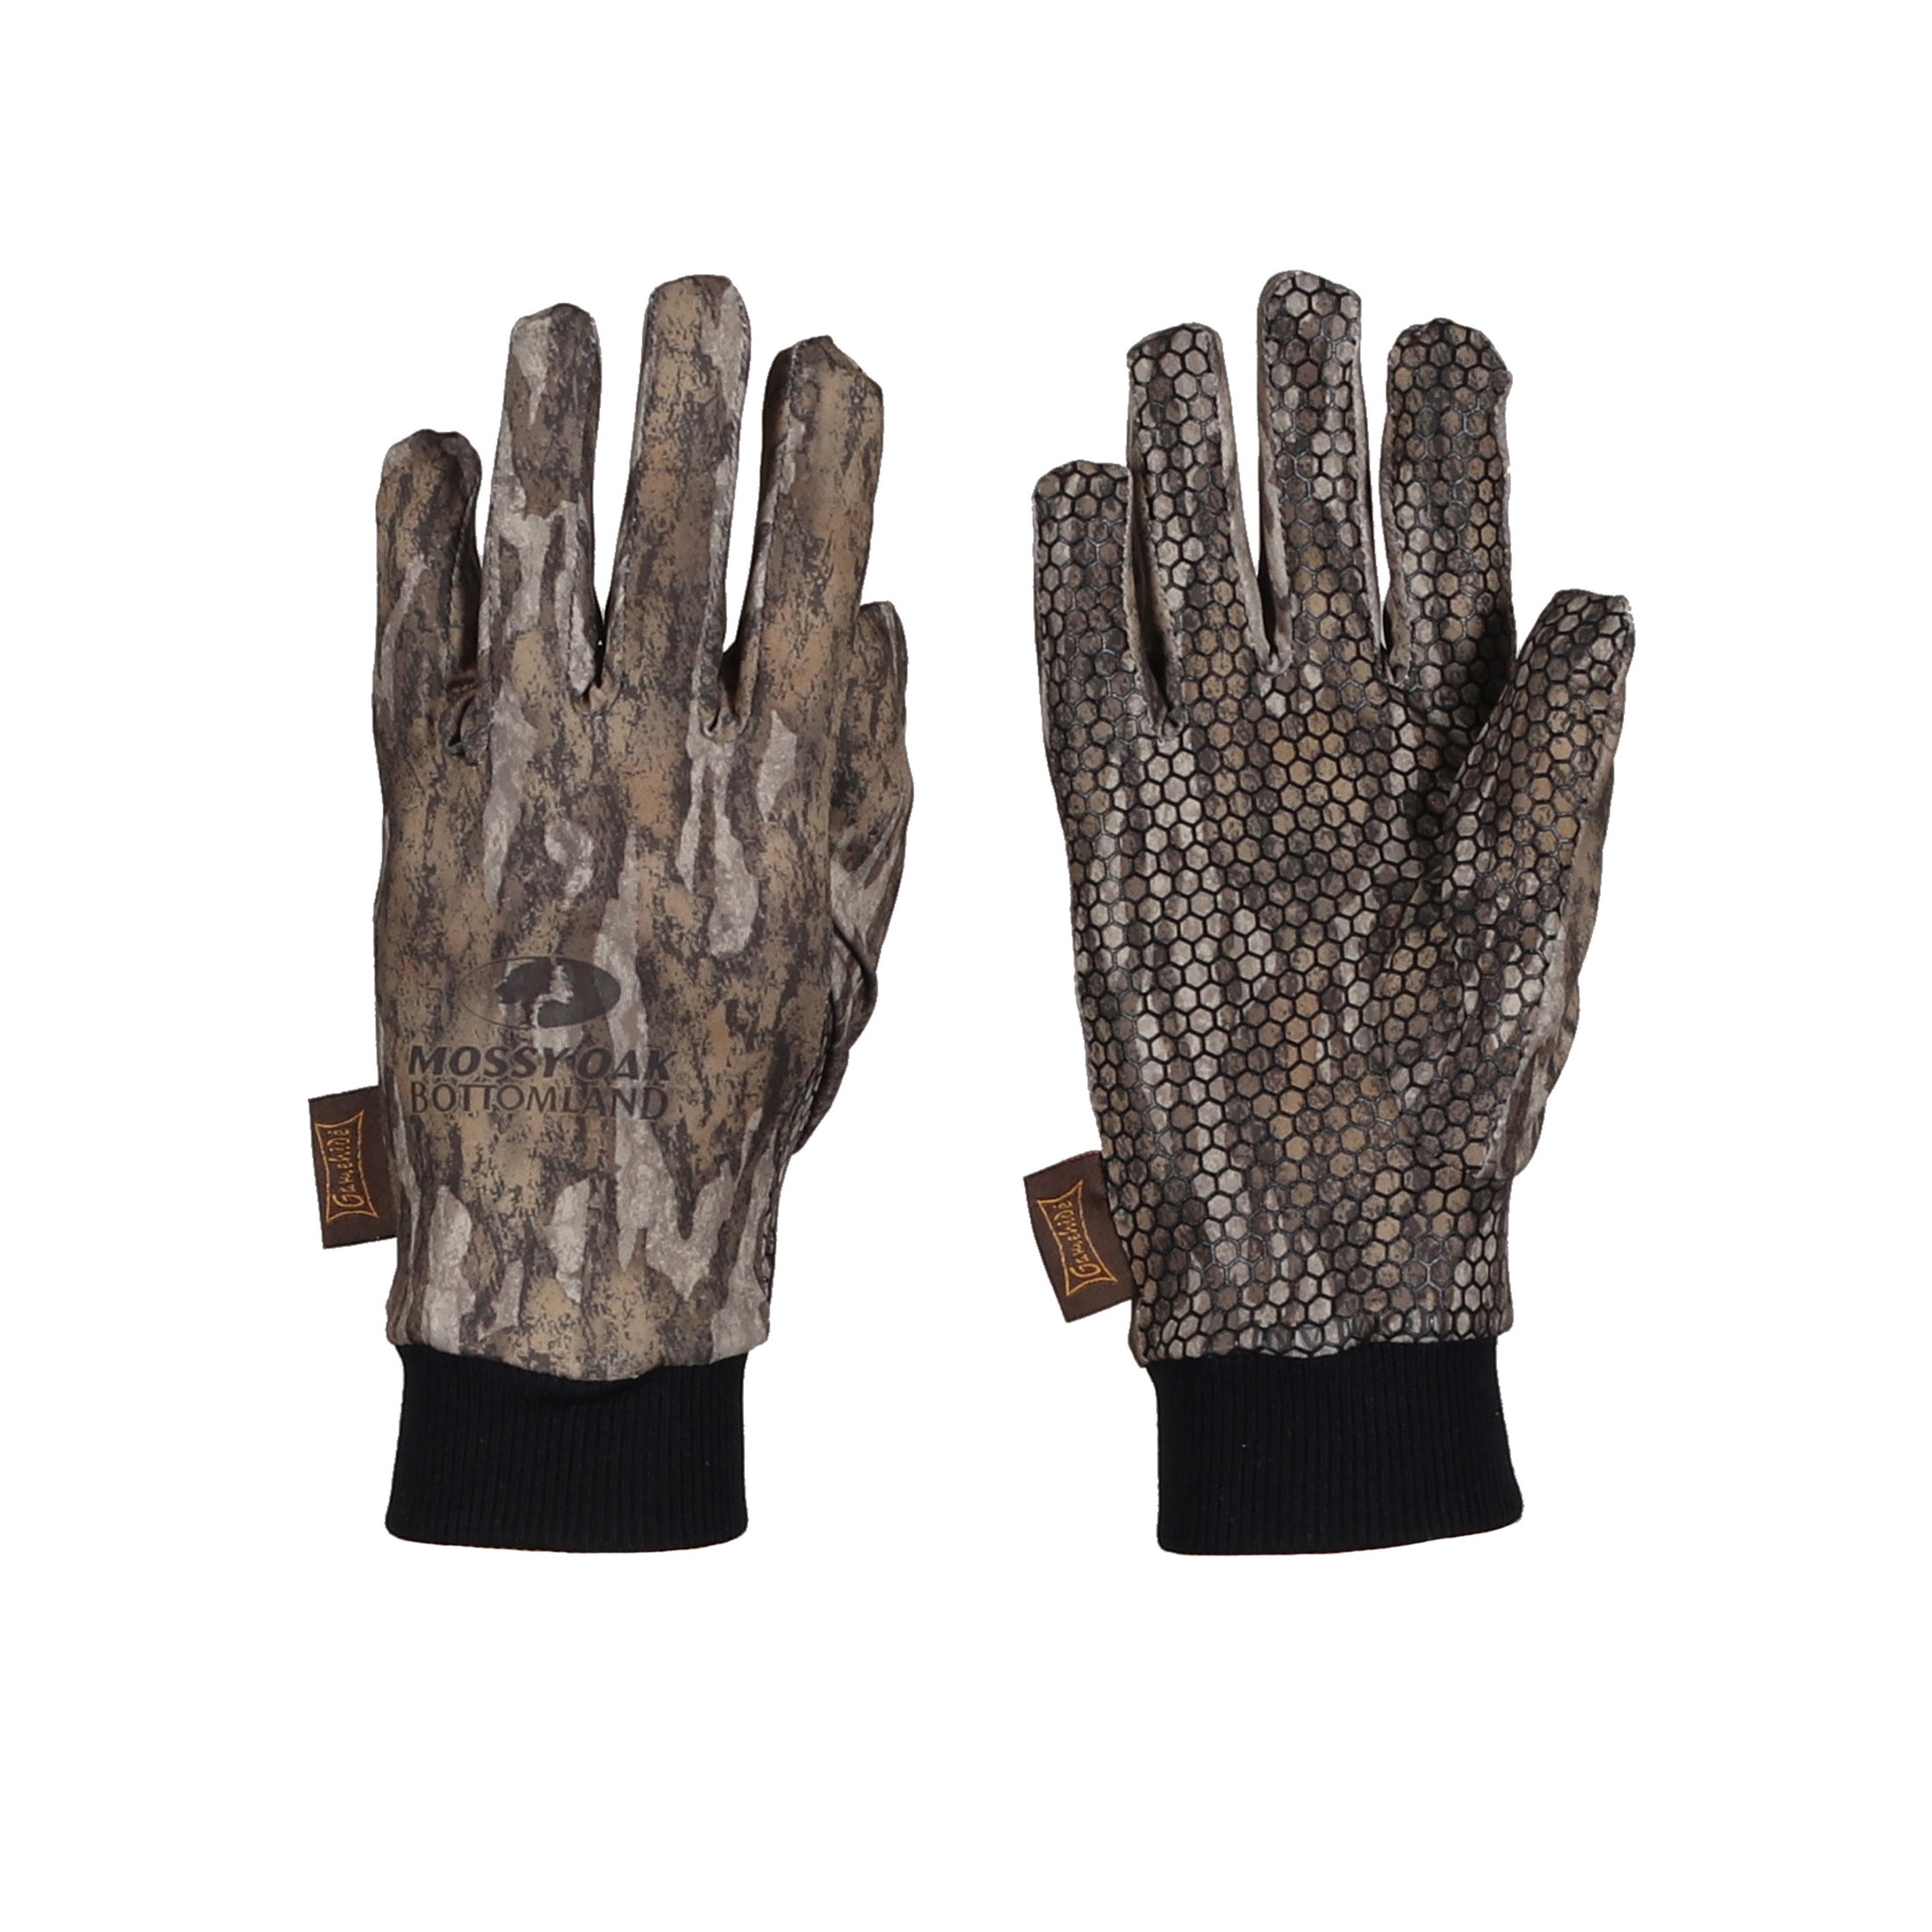 gamehide ultra lite gloves (mossy oak new bottomland)